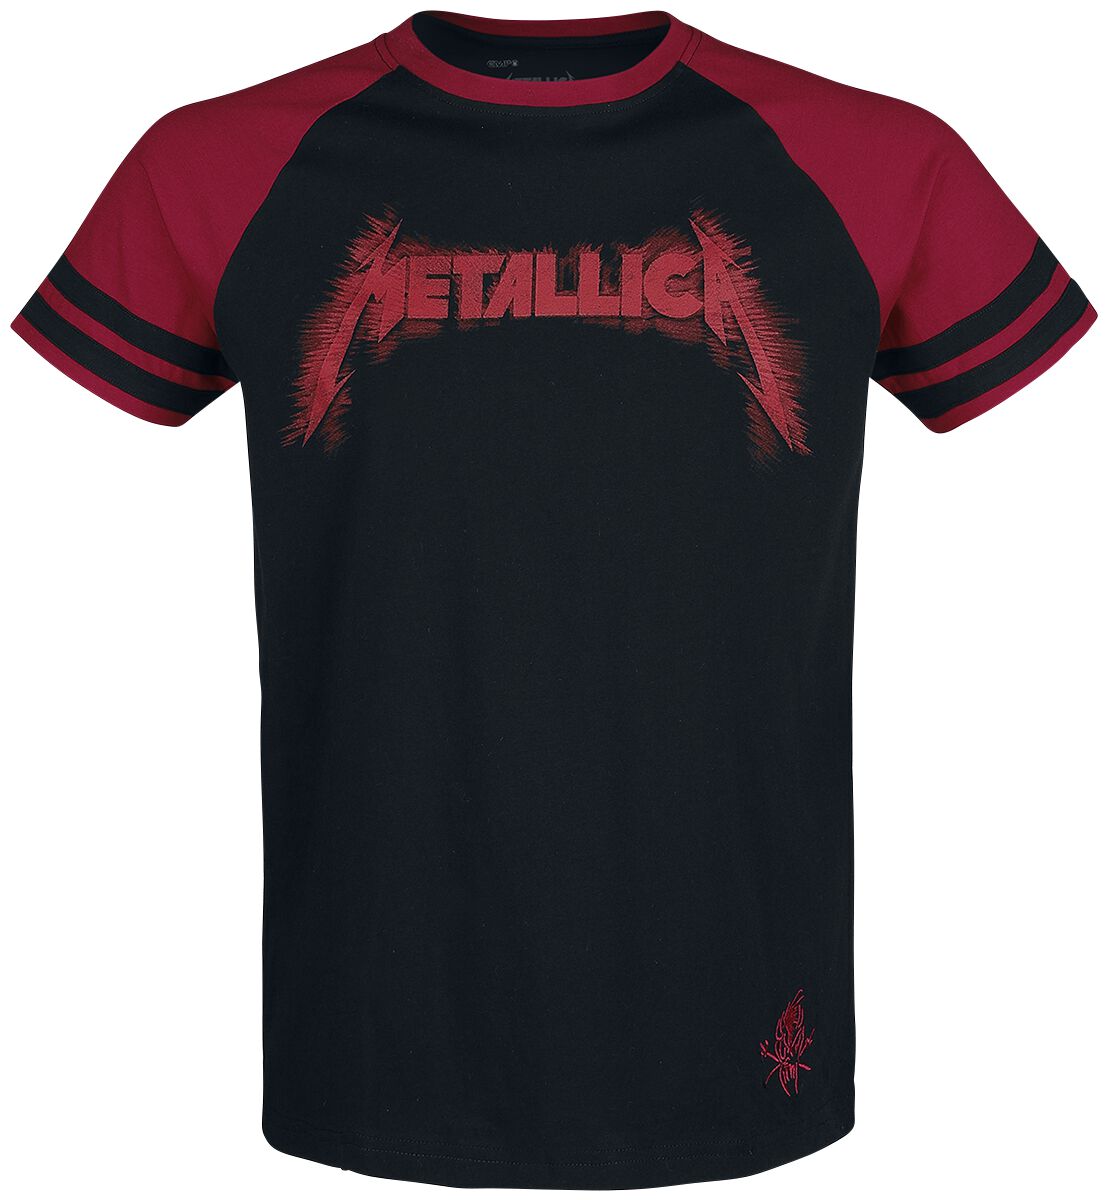 Metallica T-Shirt - EMP Signature Collection - M bis 3XL - für Männer - Größe 3XL - schwarz/rot  - EMP exklusives Merchandise!